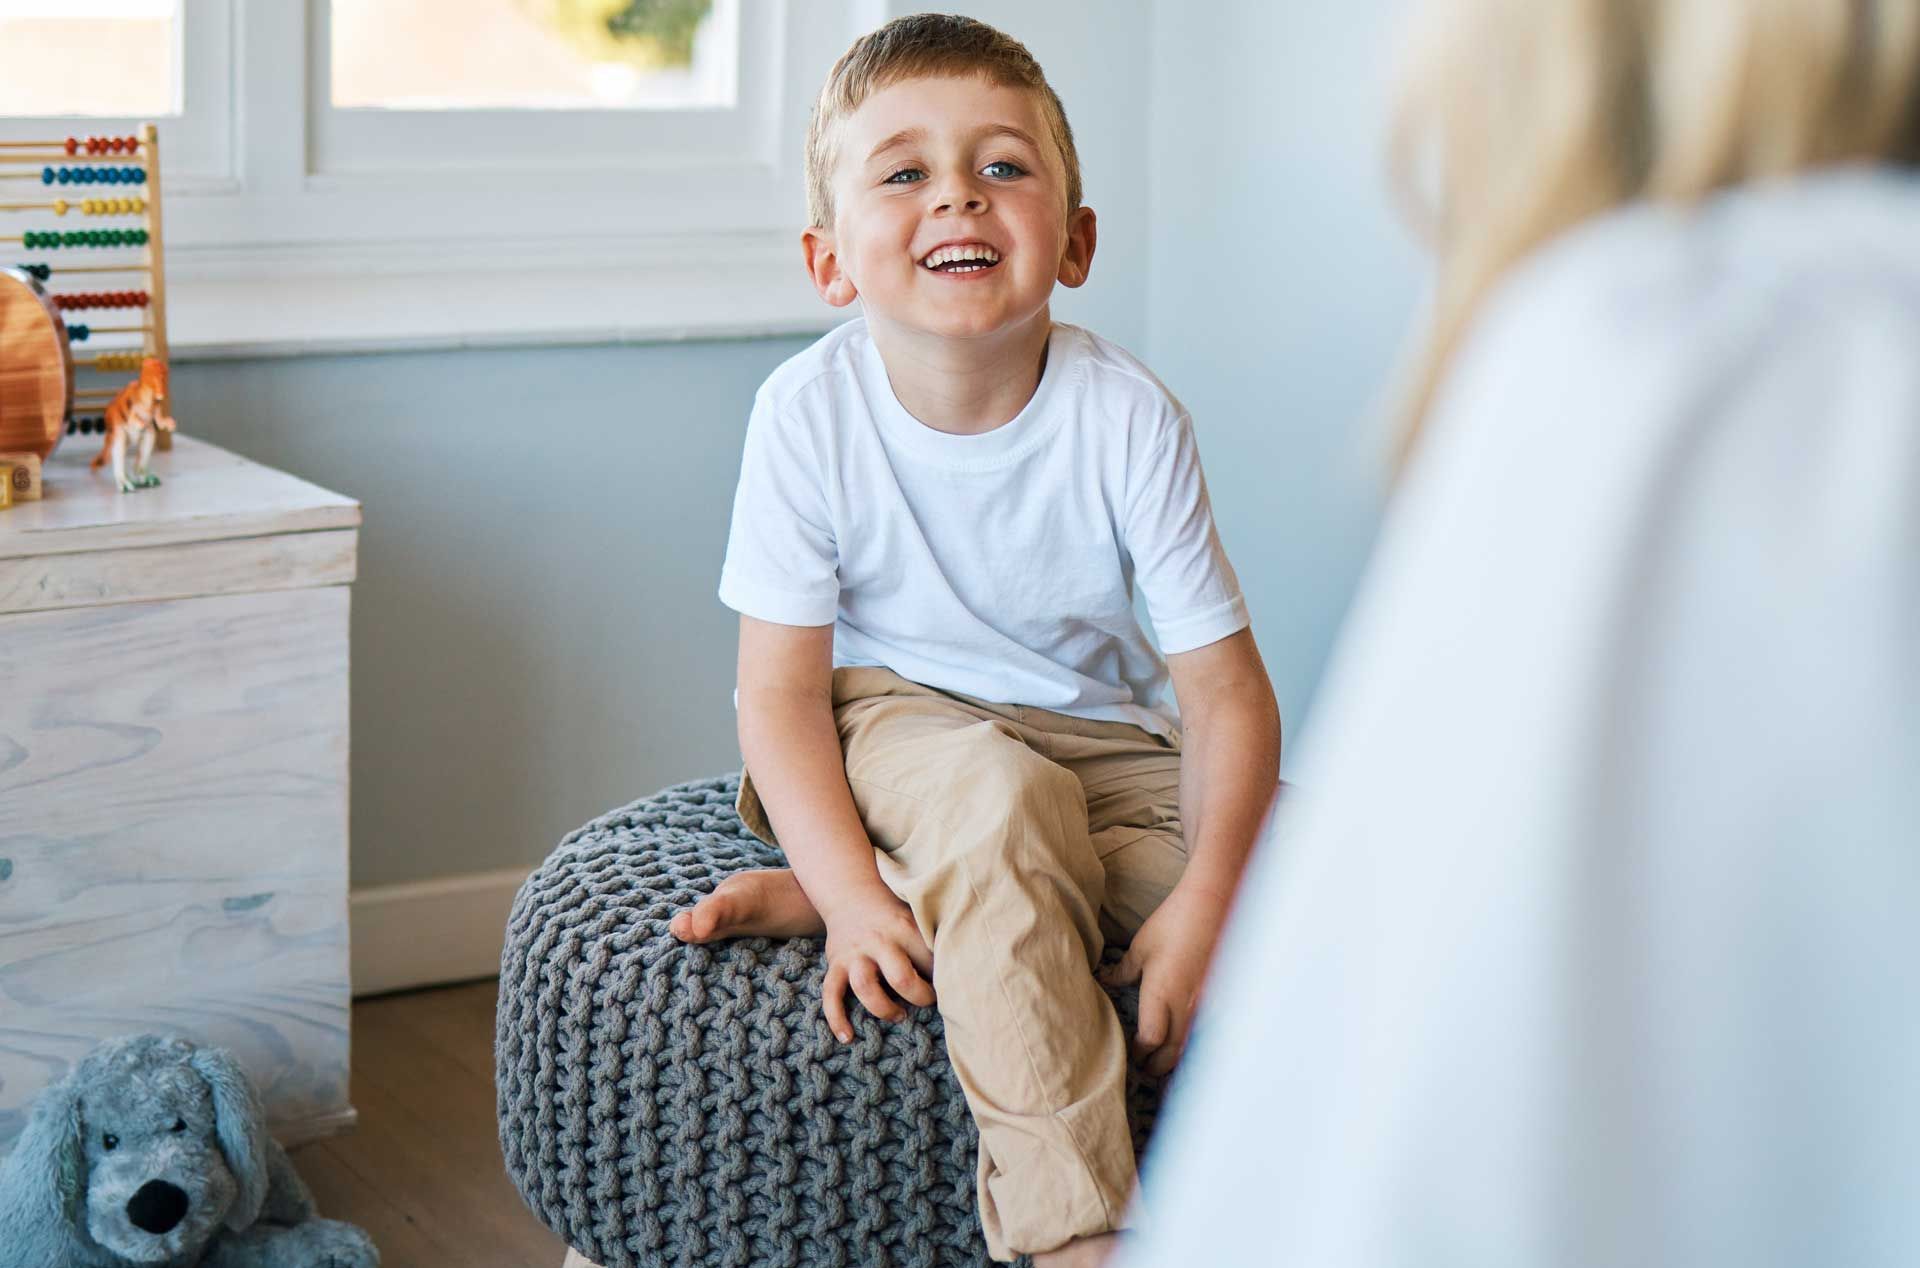 Un enfant assis dans sa chambre souriant à une personne vue de dos